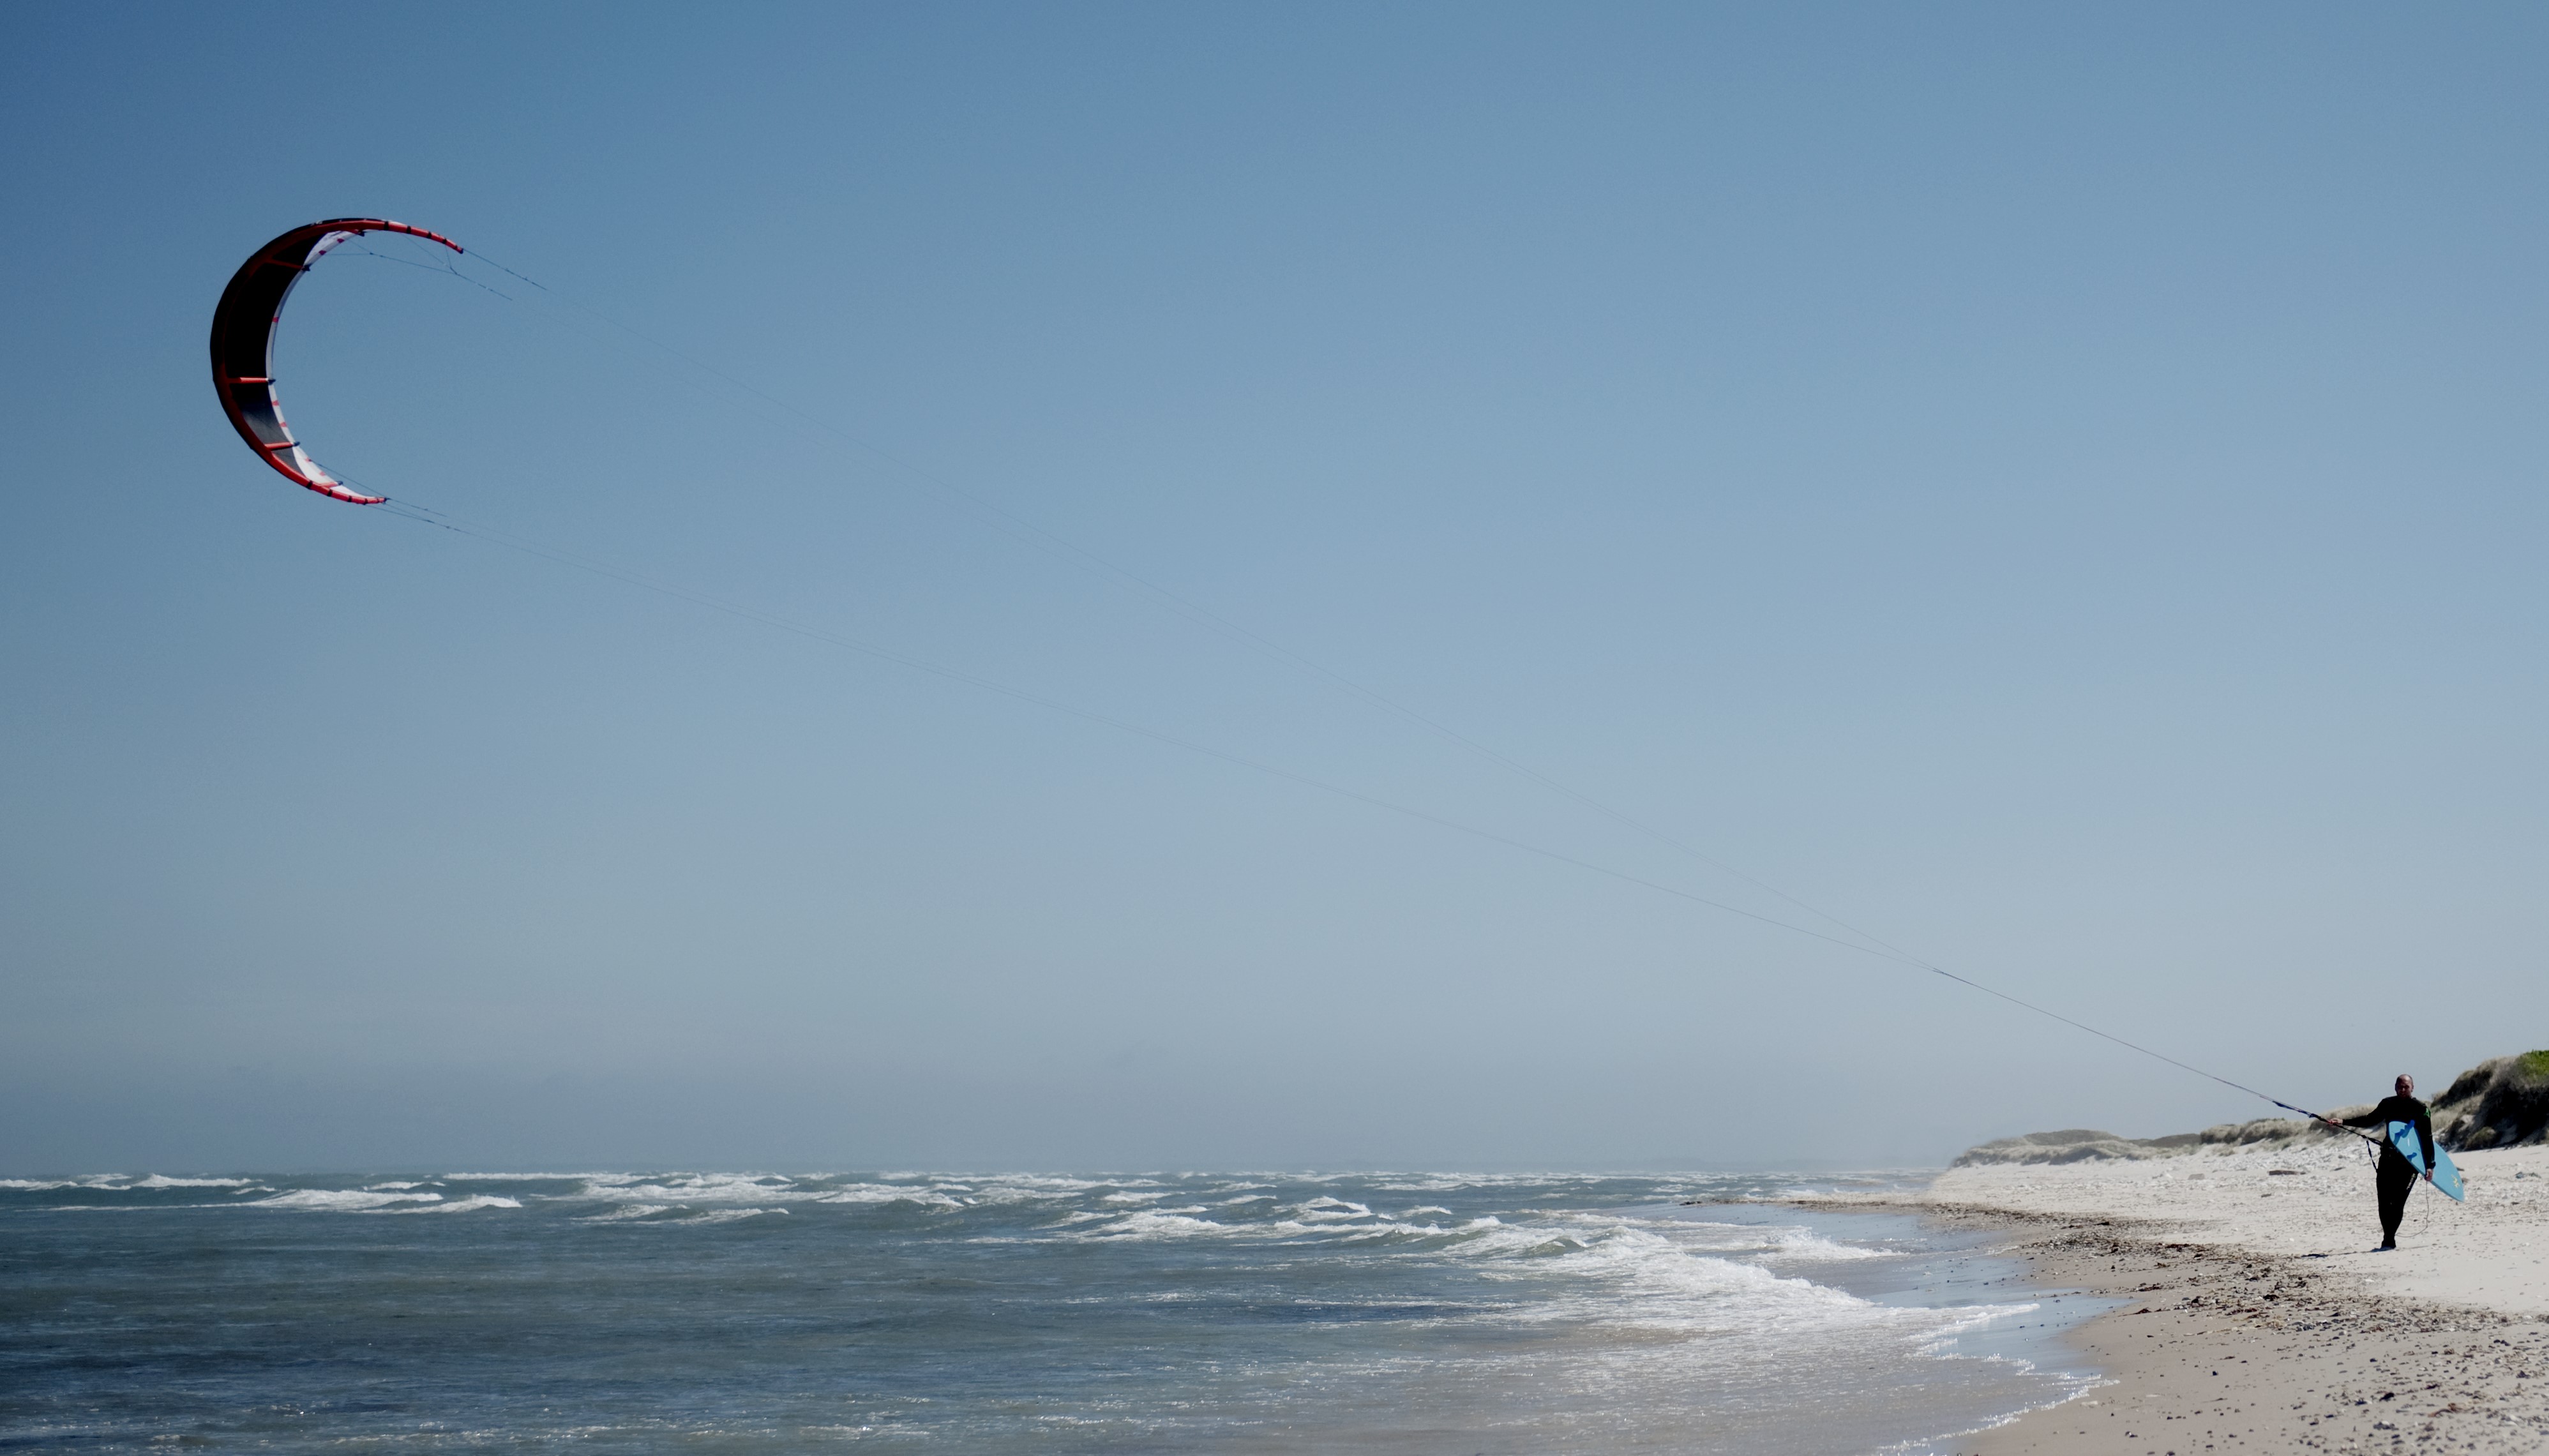 Hav, kitesurfer går på stranden med sin kite.jpg